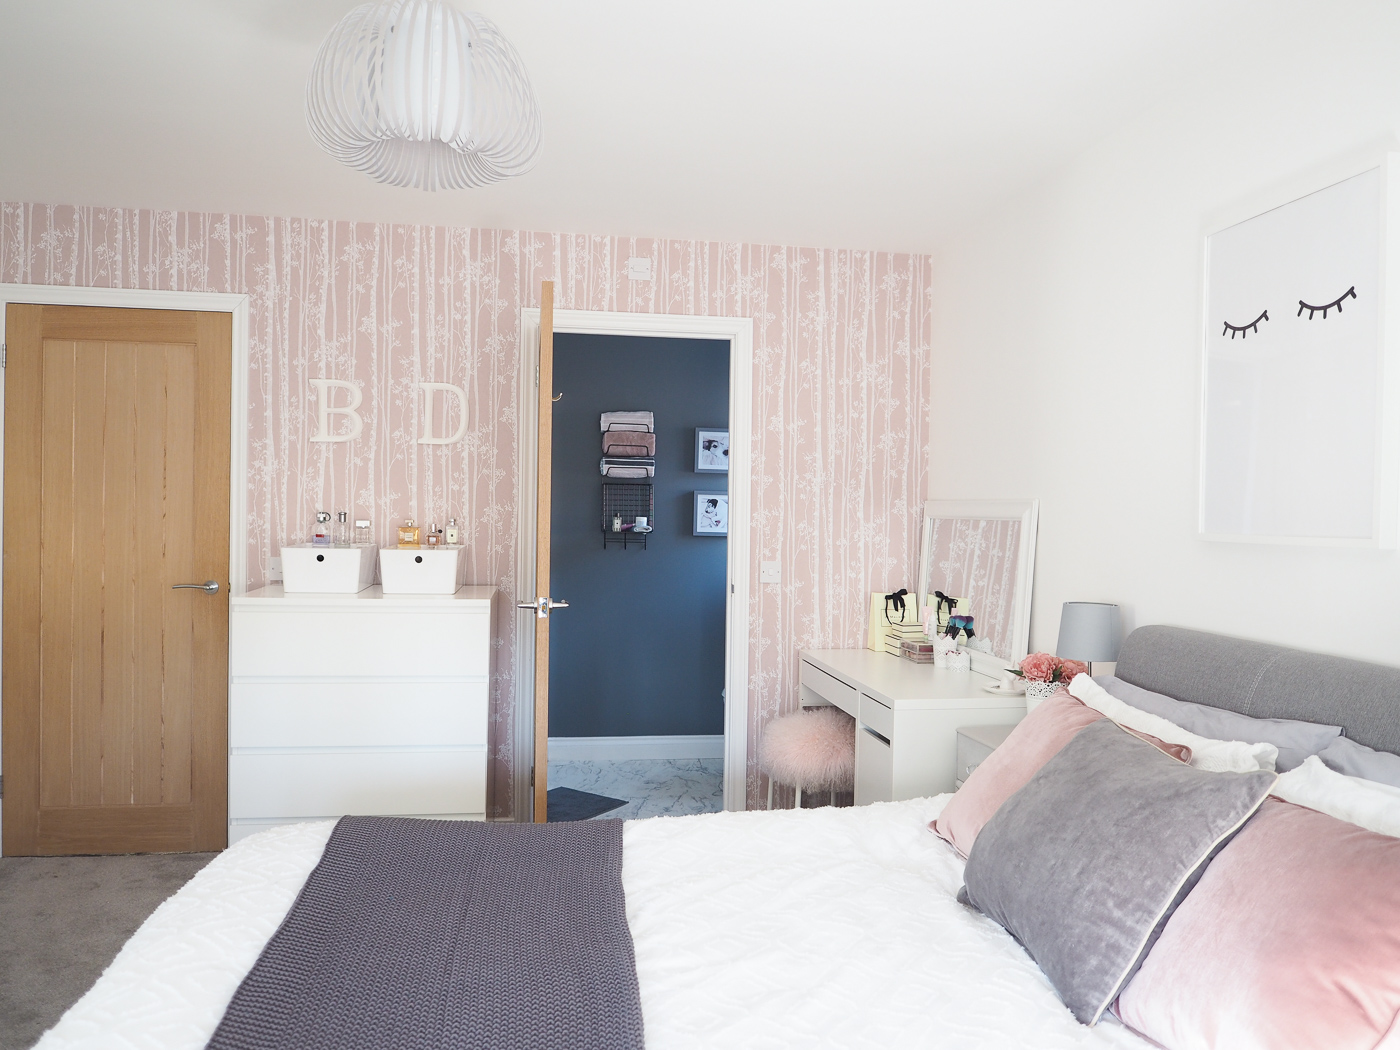 papel pintado rosado y gris del dormitorio,dormitorio,habitación,mueble,propiedad,cama